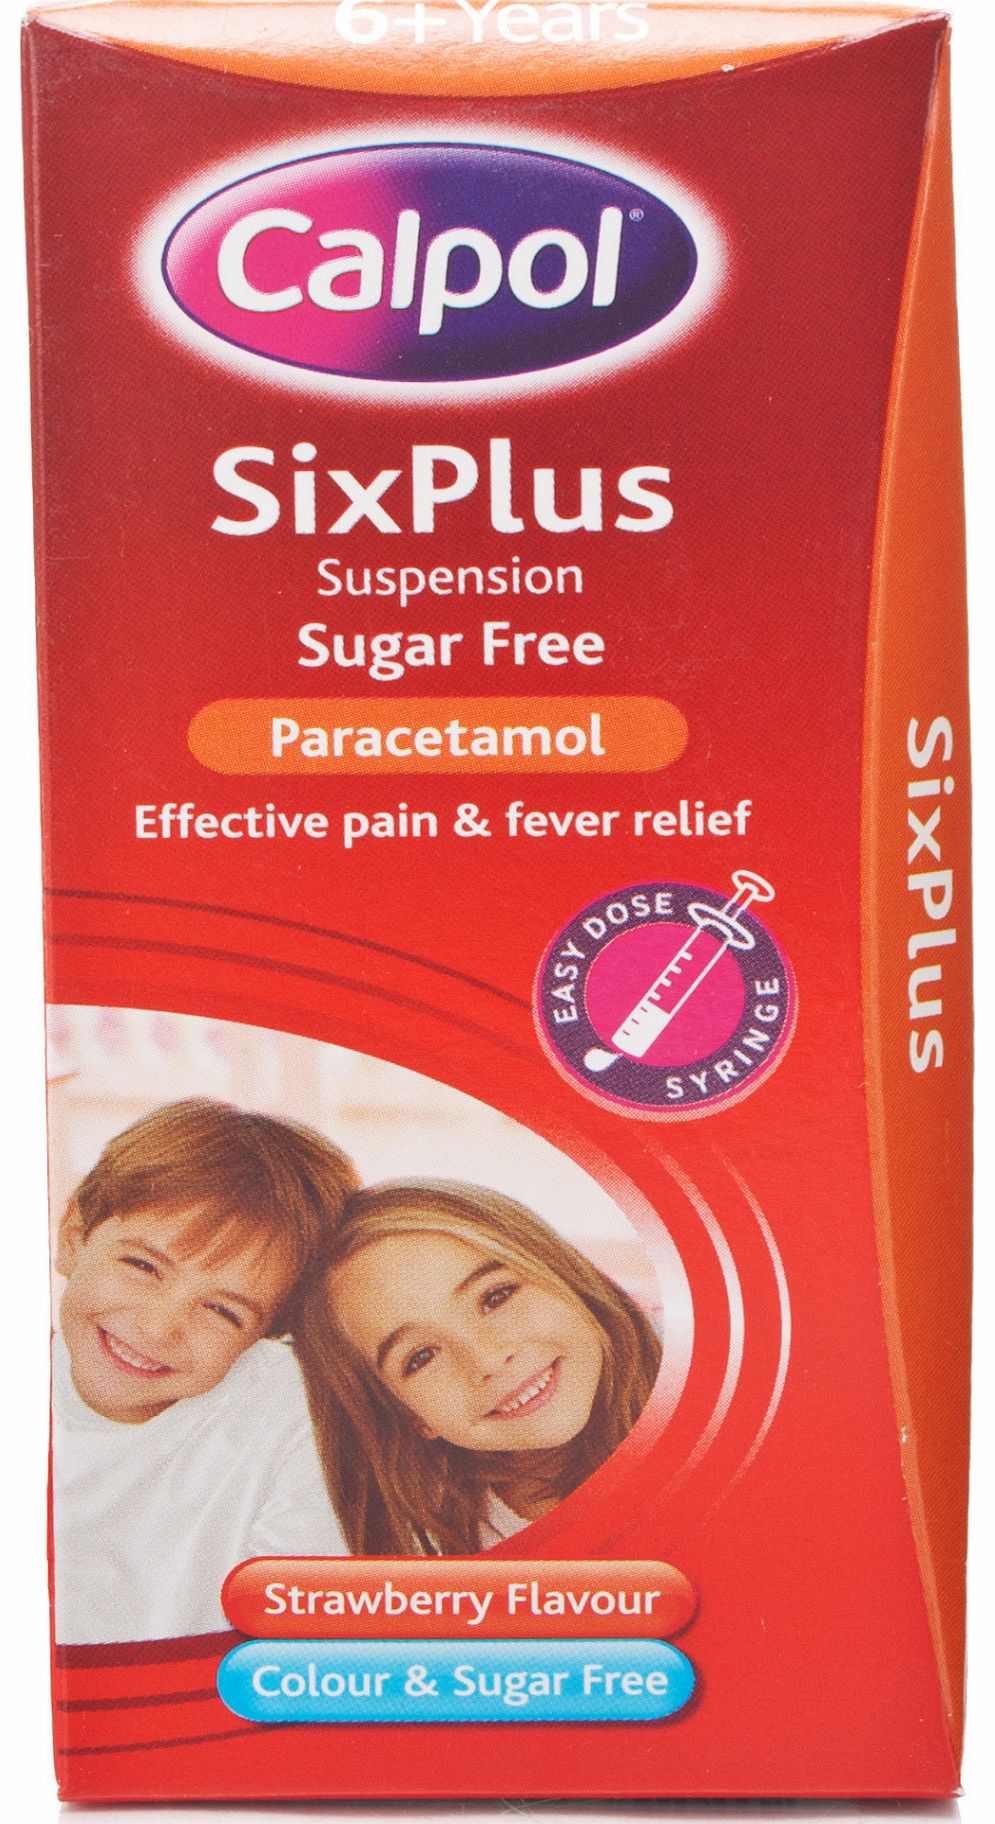 Six Plus Suspension Sugar Free